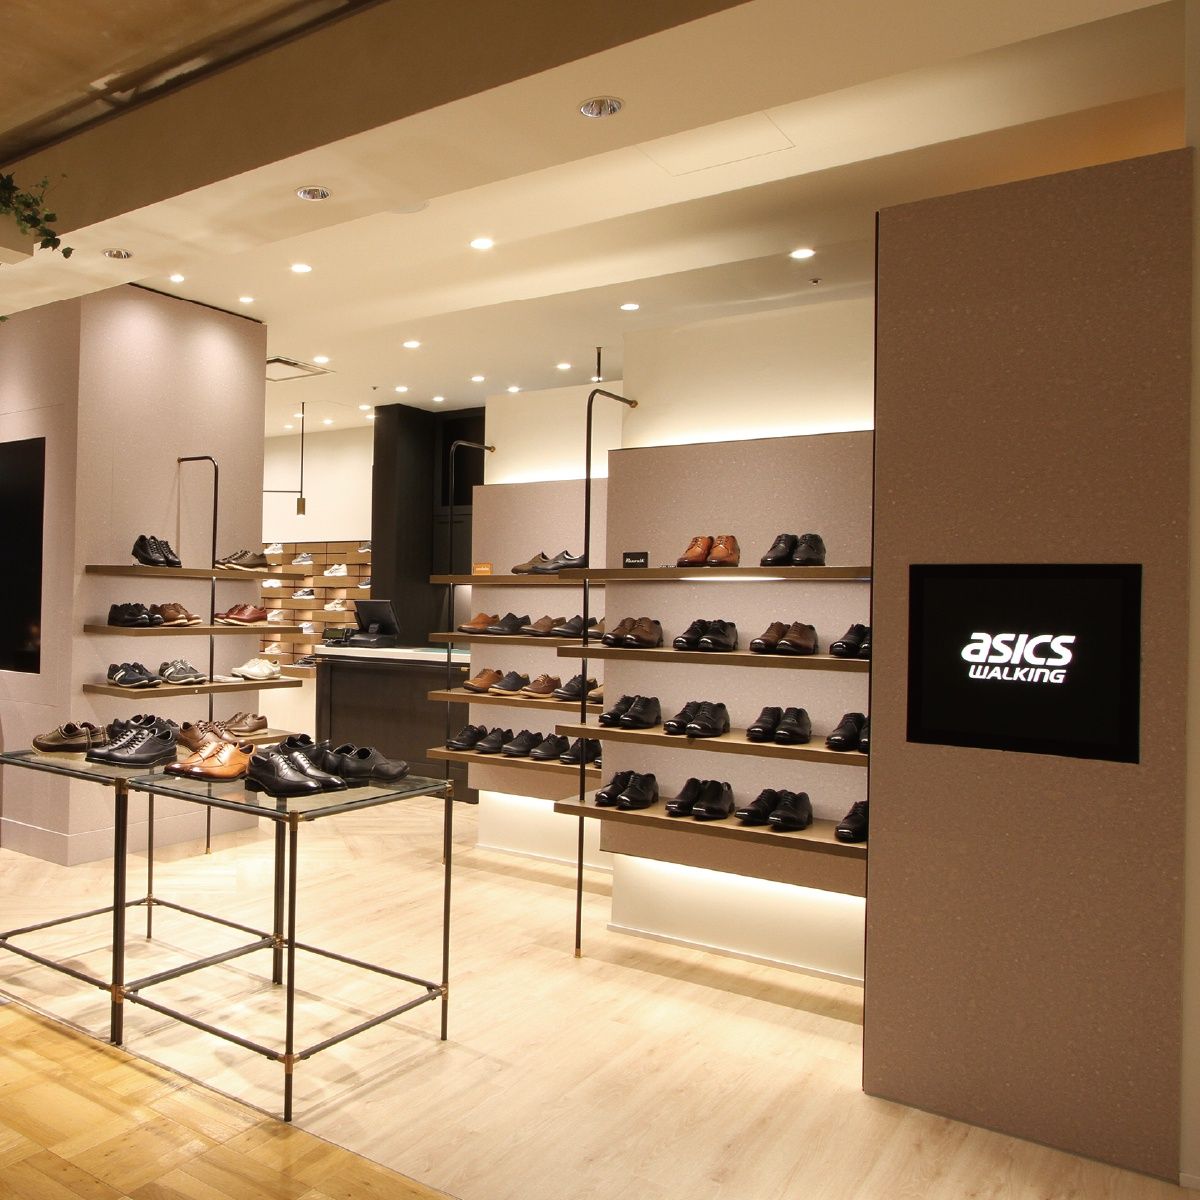 アシックスウォーキング直営店では、専門スタッフがお客様の足に合った靴選びをお手伝いいたします。